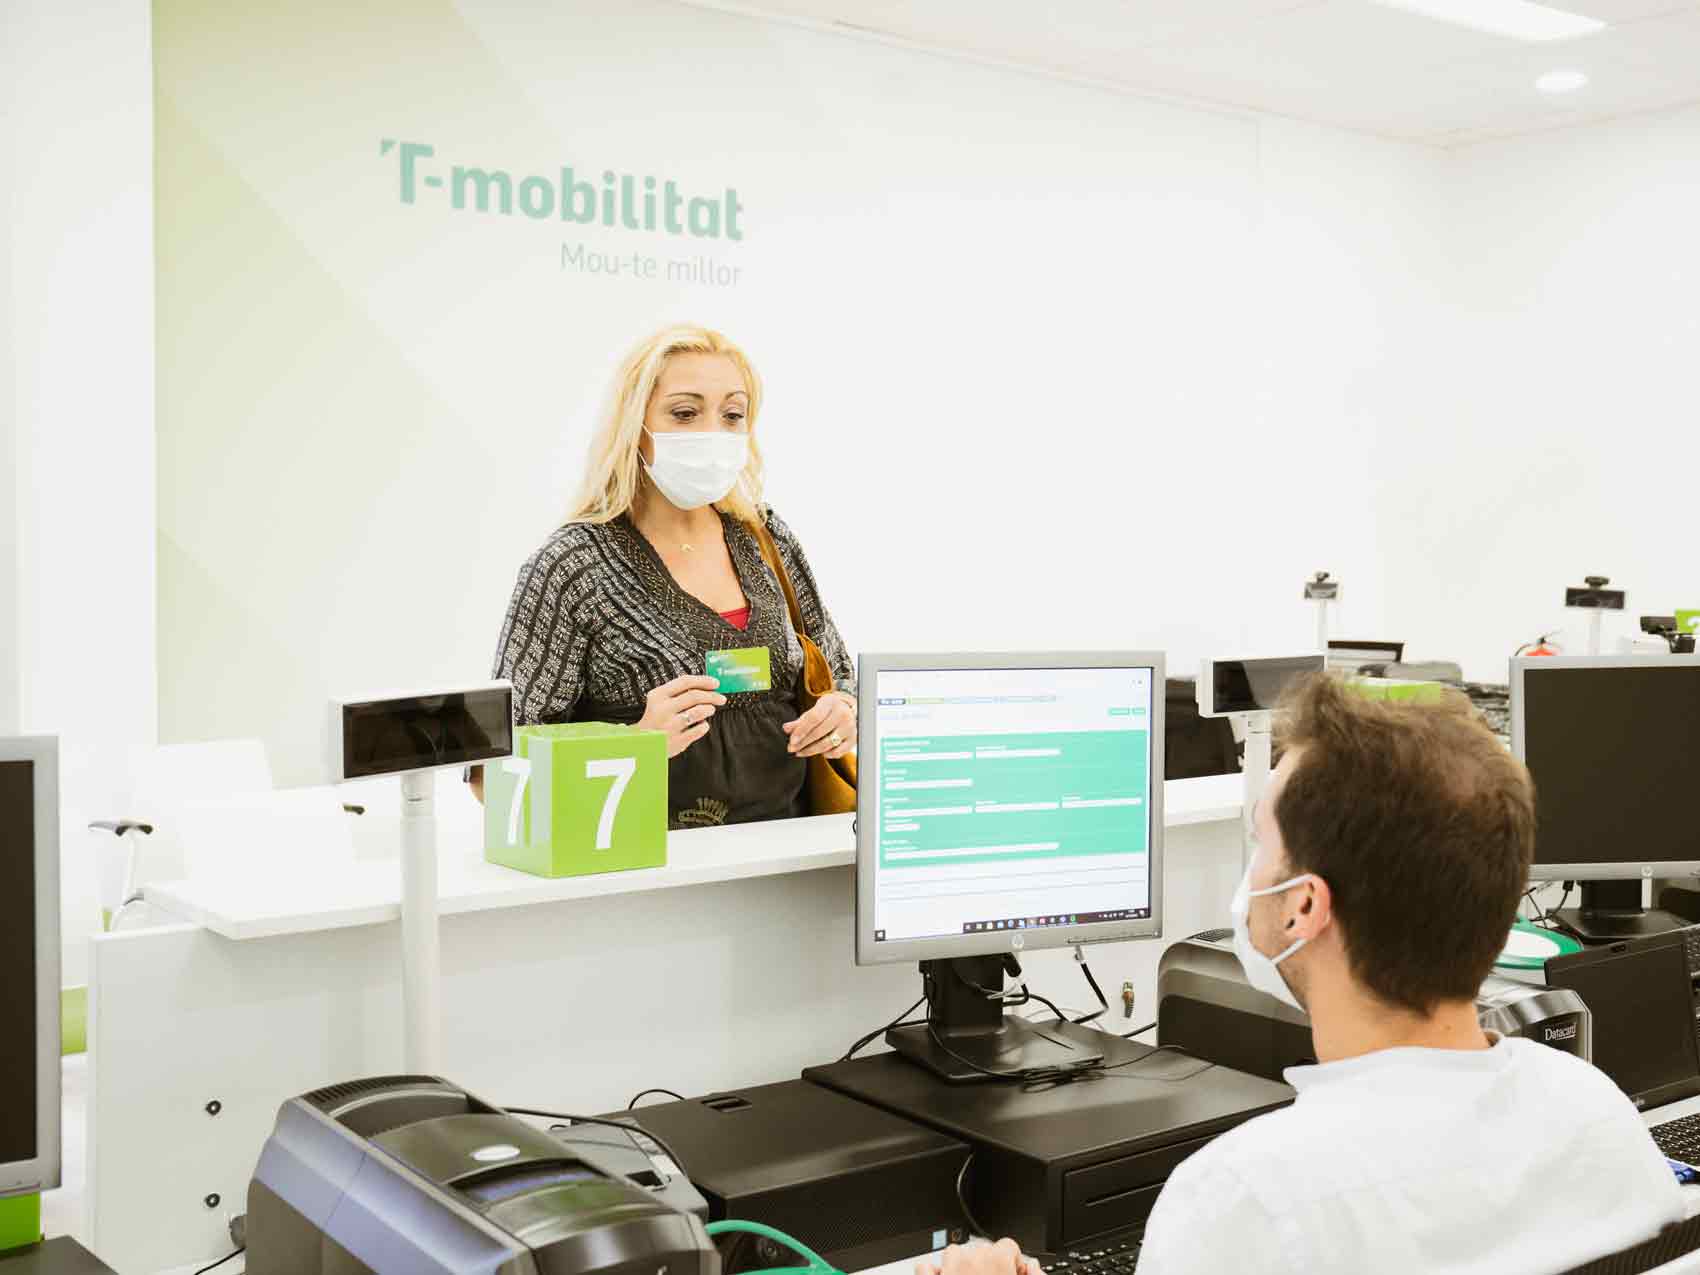 Una clienta és atesa al Centre T-mobilitat.